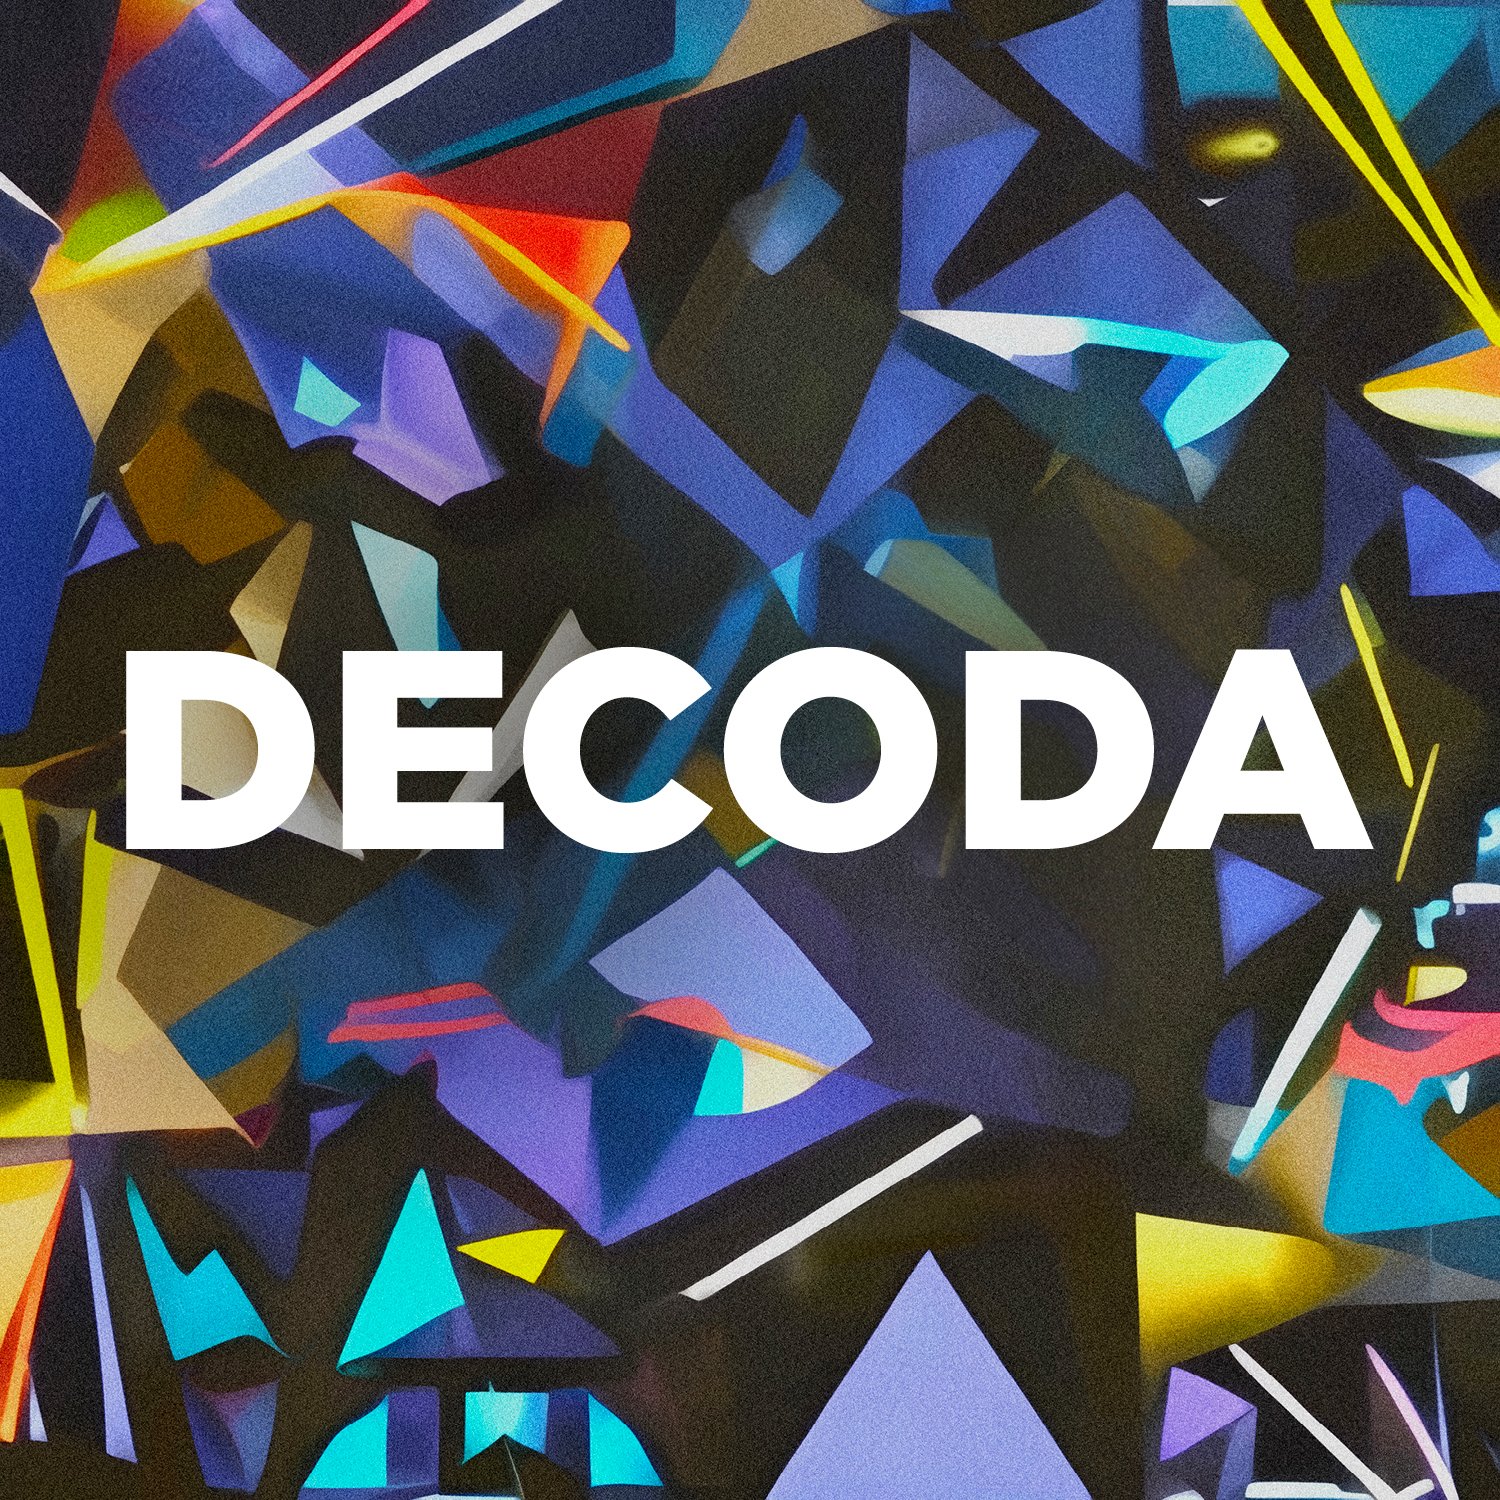 <a href=“https://www.brightshiny.ninja/decoda"><b>DECODA</a></b> Decoda